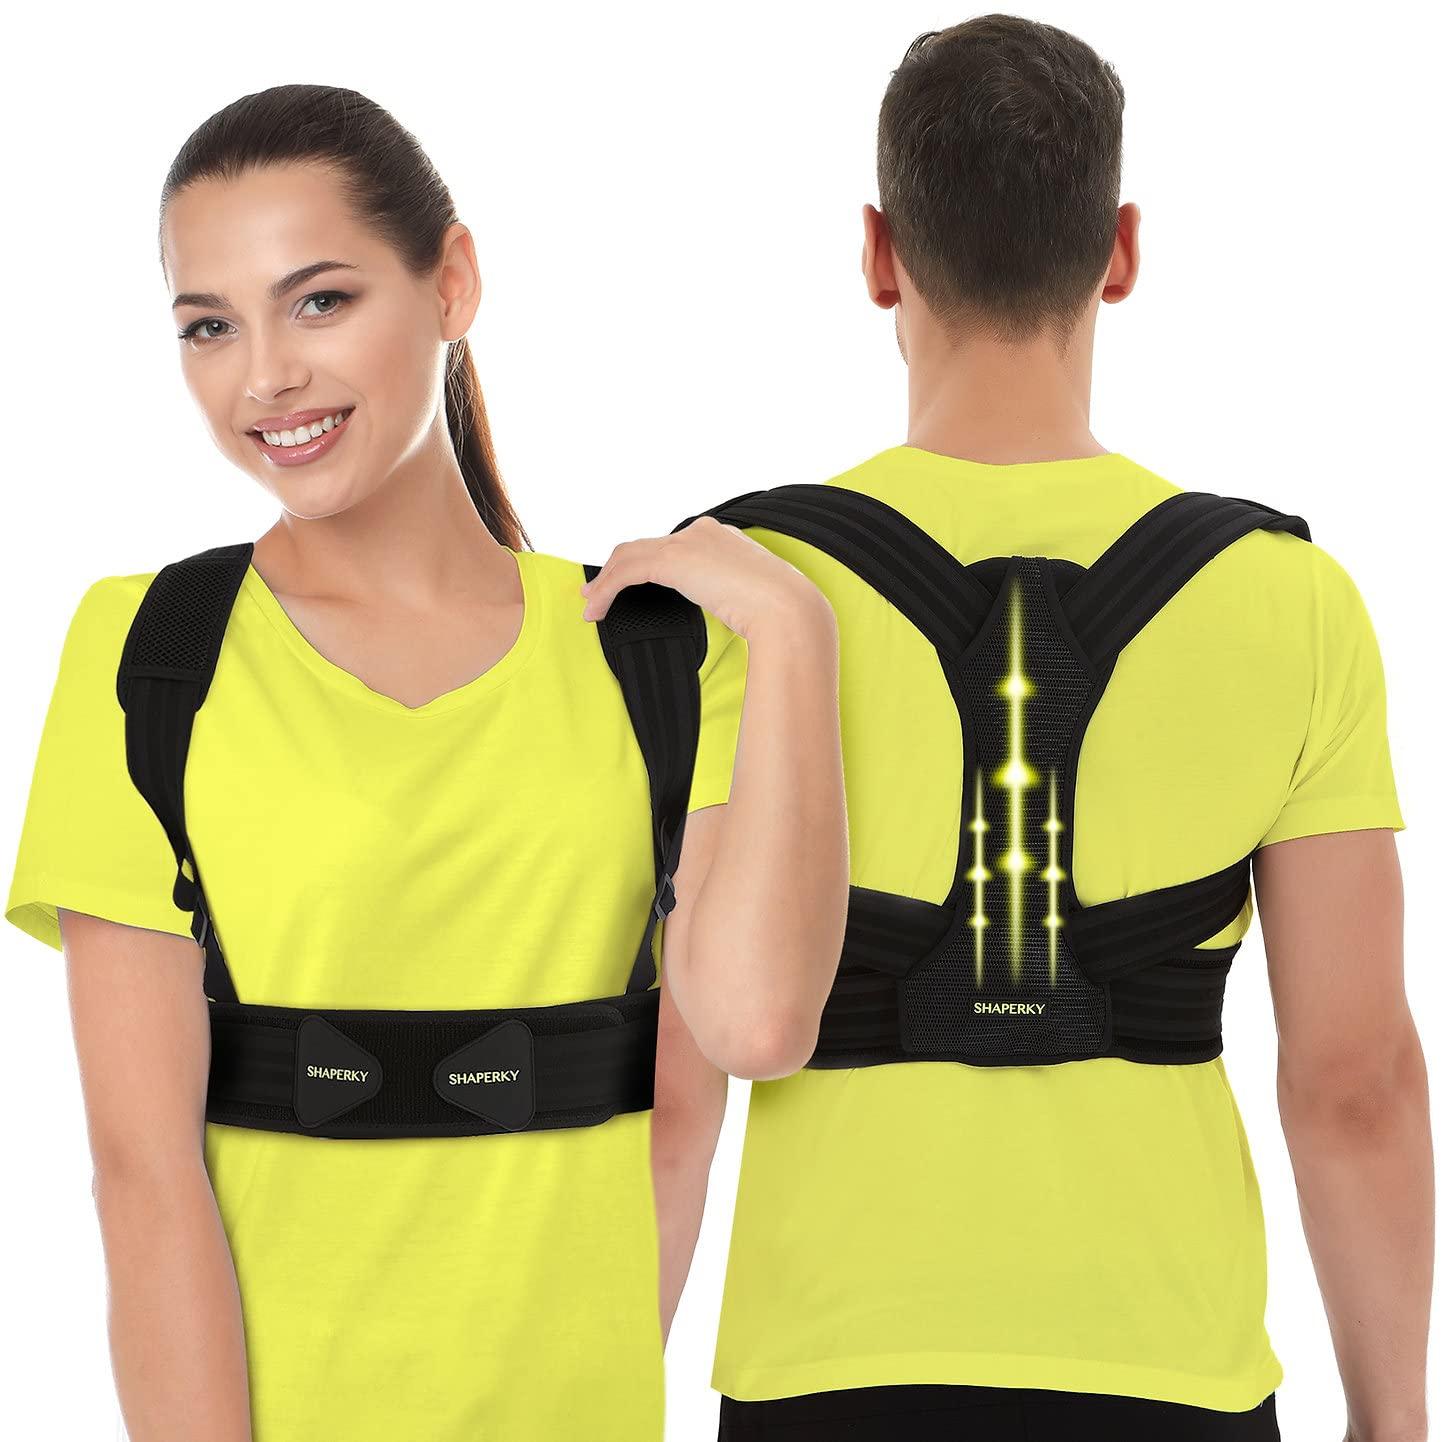 LONG LIFE Posture Corrector, Shoulder Back Support Belt for Women